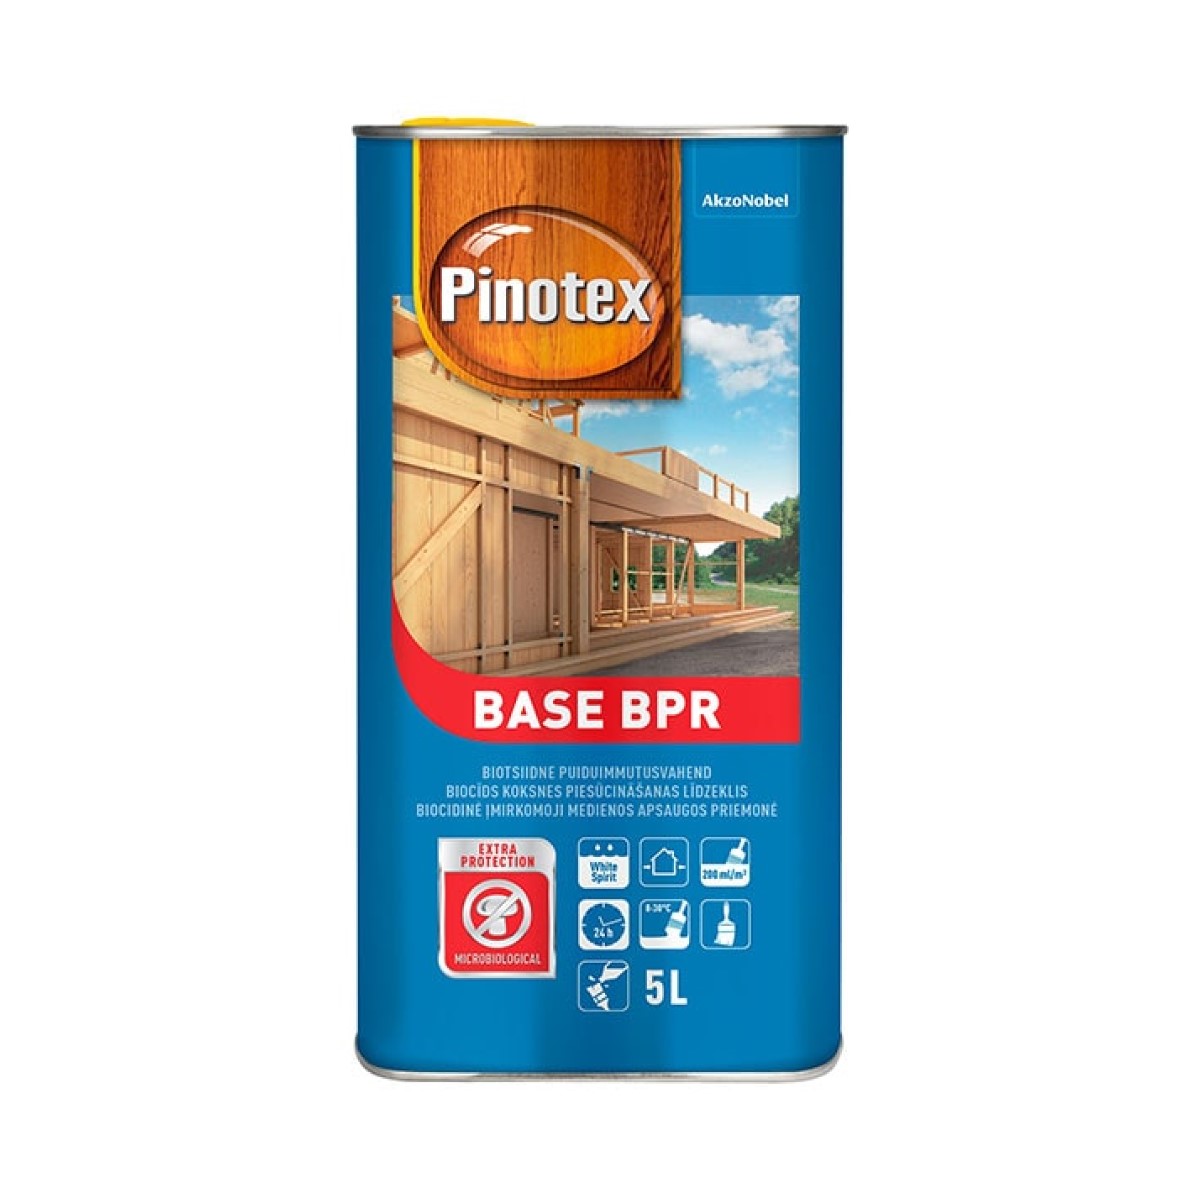 PINOTEX BASE BPR koksnes gruntçðanas lîdzeklis 5L